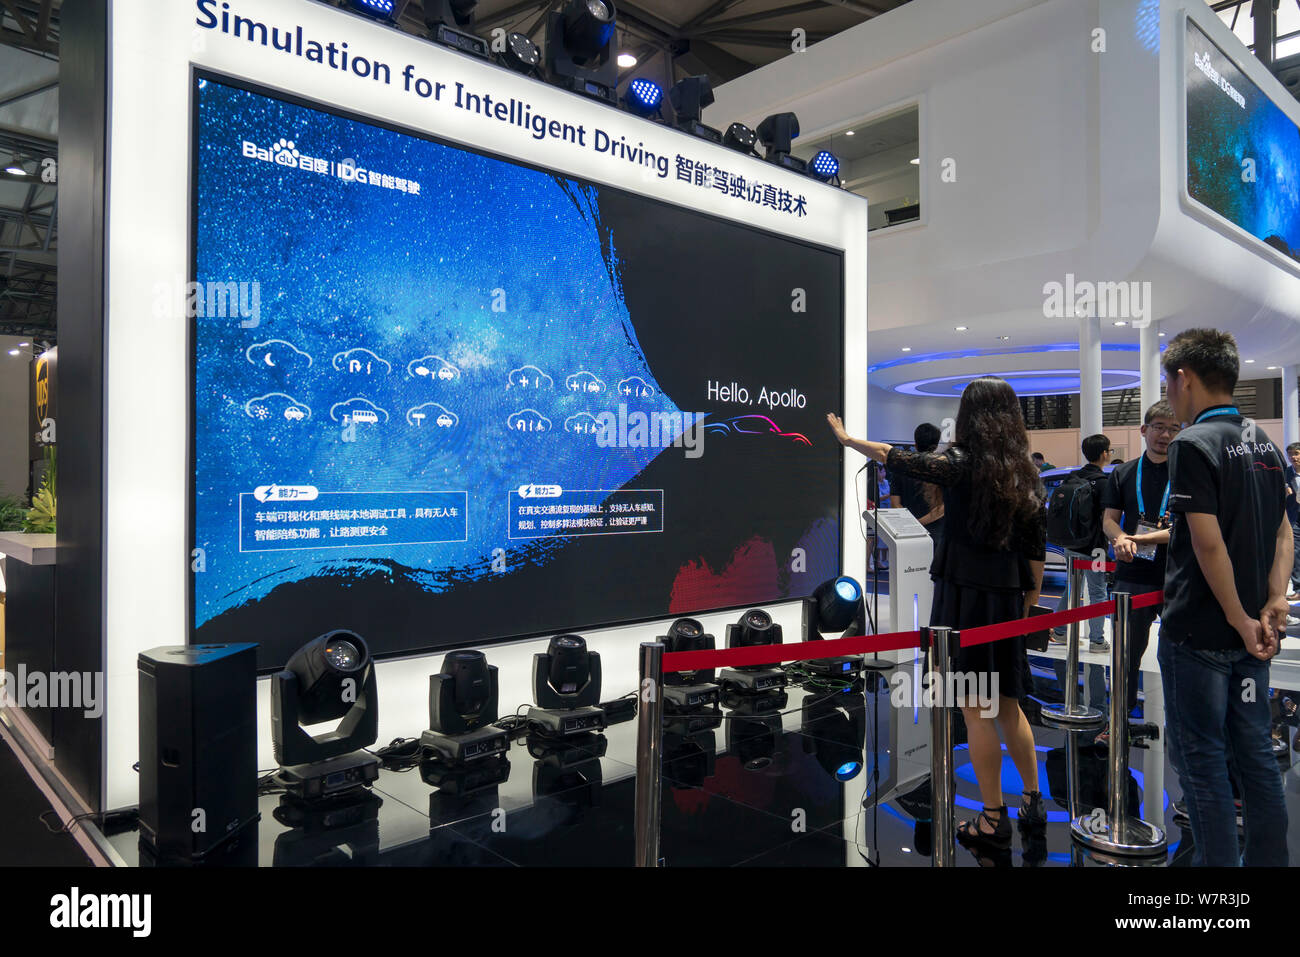 Besucher ausprobieren Simulation für intelligente fahren am Stand von Baidu während der 2017 International Consumer Electronics Show CES Asien Asien (2017) Stockfoto